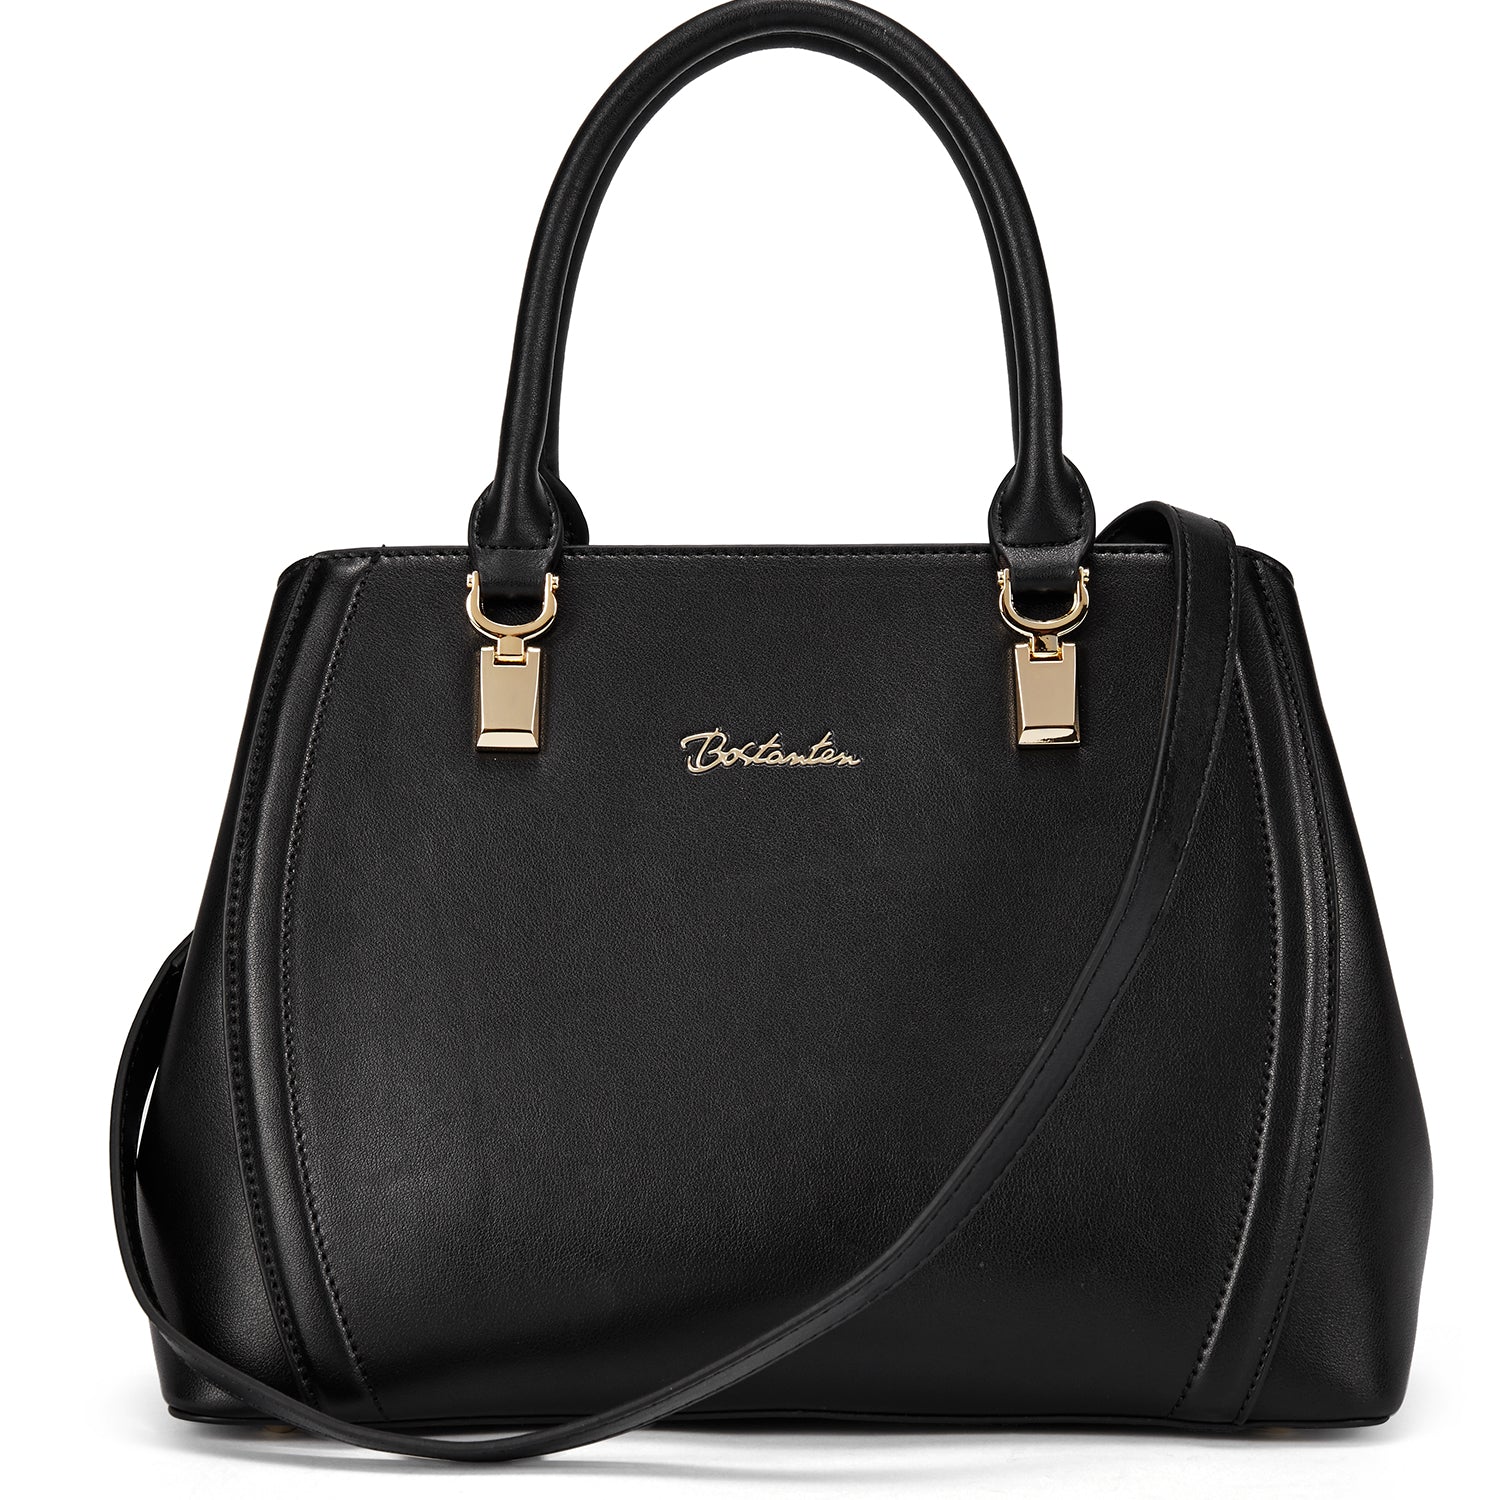 BOSTANTEN Women Leather Handbag Designer Top Handle Satchel Shoulder B